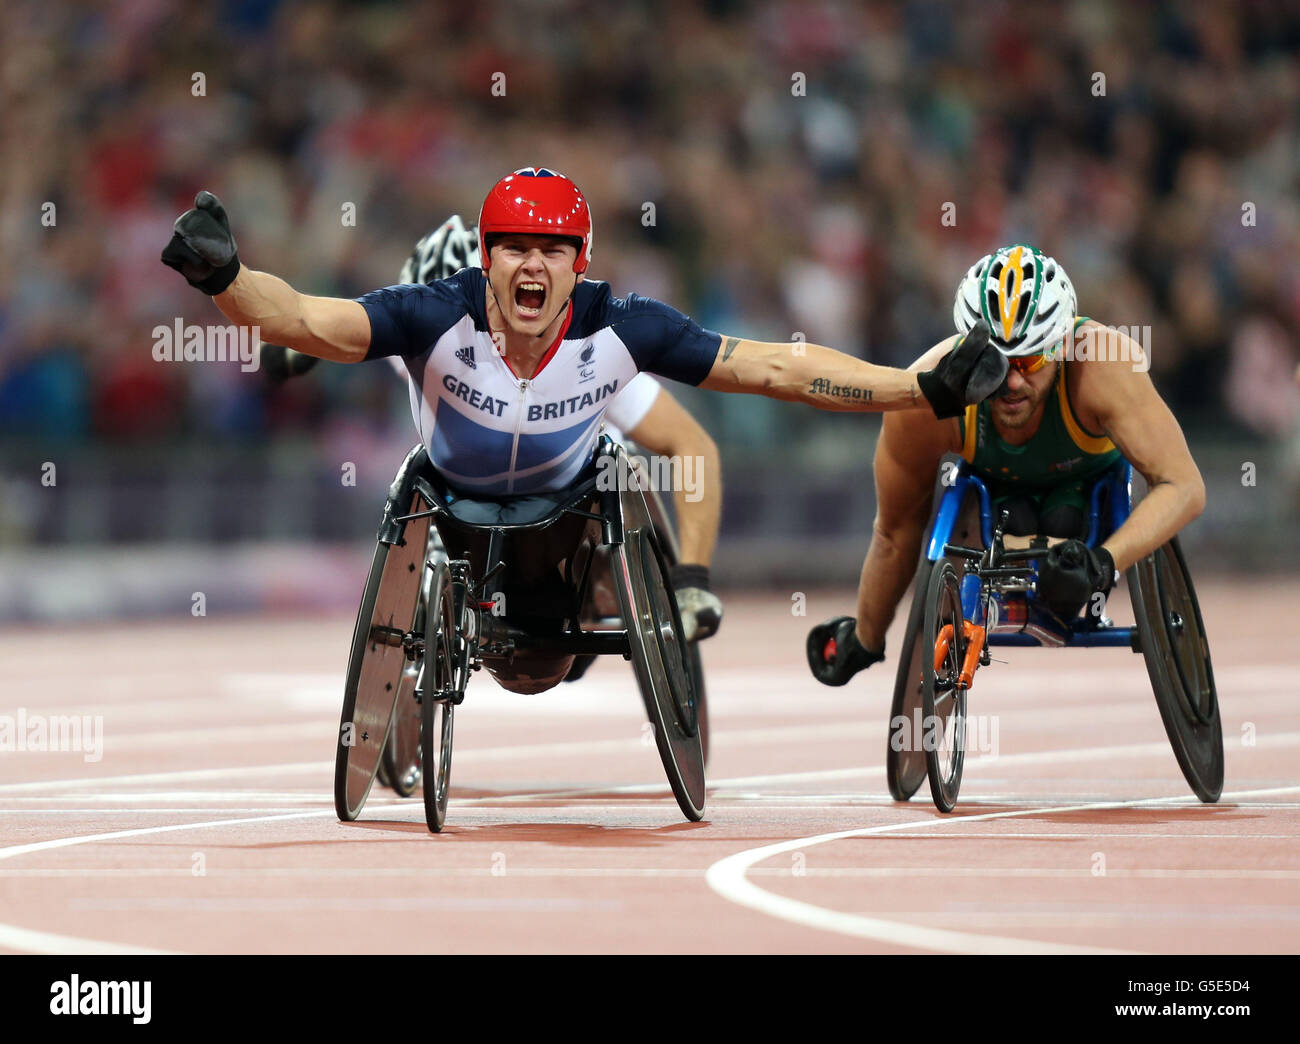 Jeux paralympiques de Londres - jour 4.David Weir, en Grande-Bretagne, célèbre la victoire de l'or lors de la finale du In the Men's 5000m - T54 au stade olympique de Londres. Banque D'Images